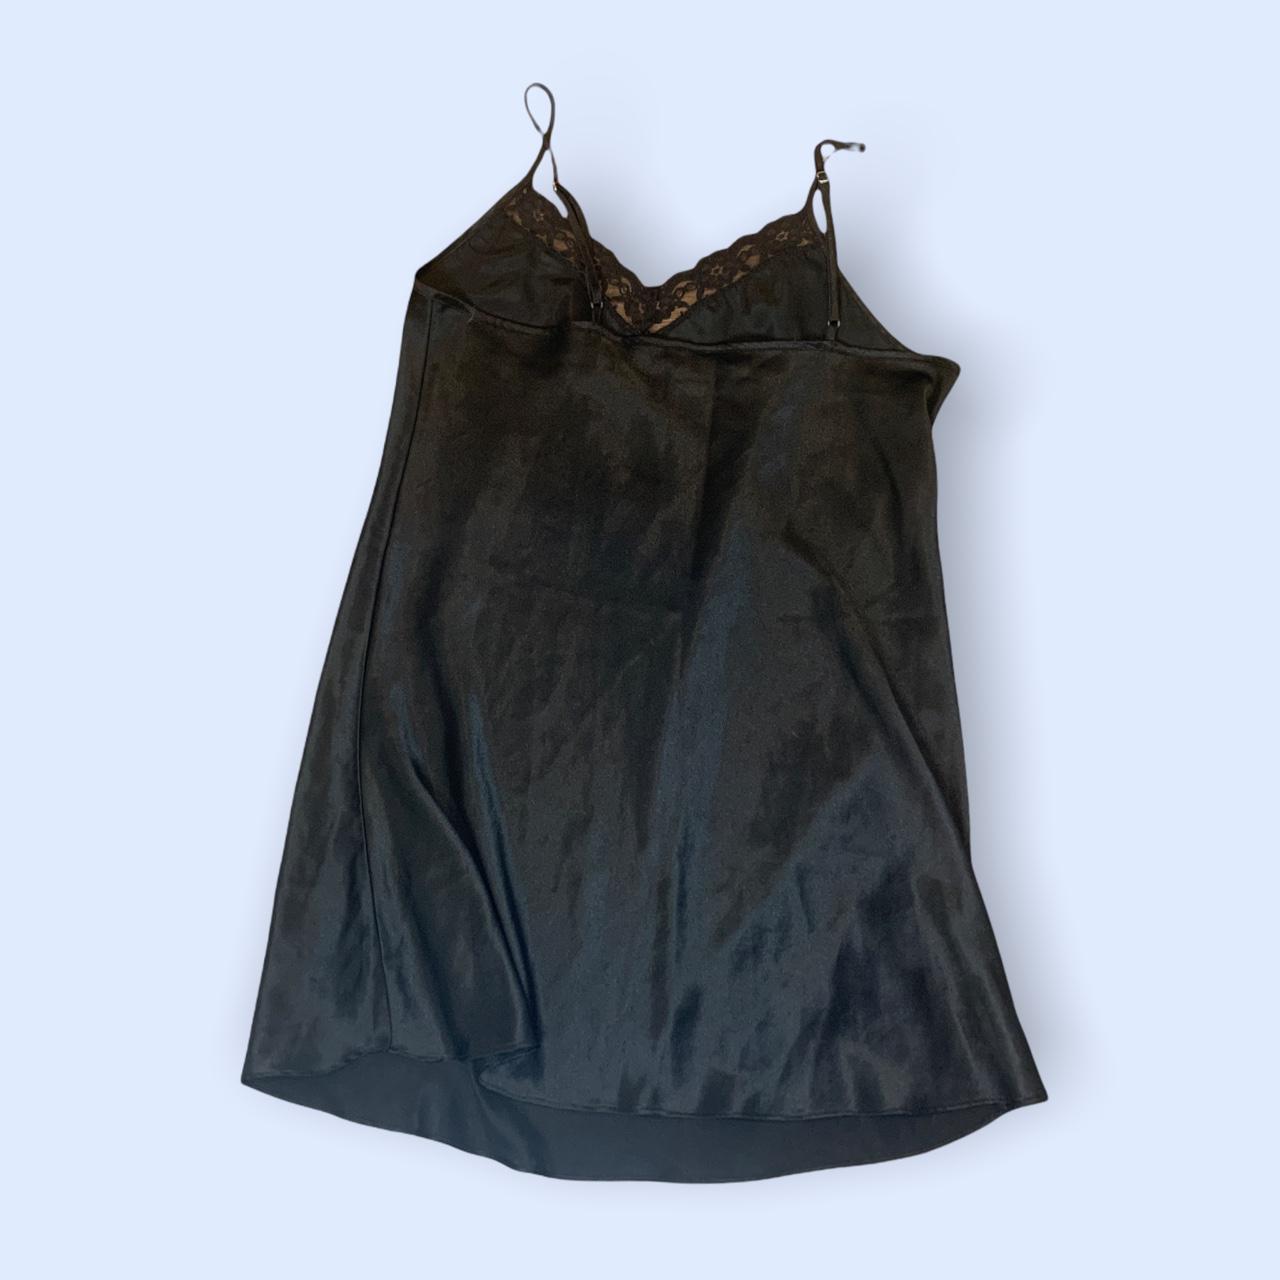 Product Image 4 - Black Lace Slip Dress 
Measurements: